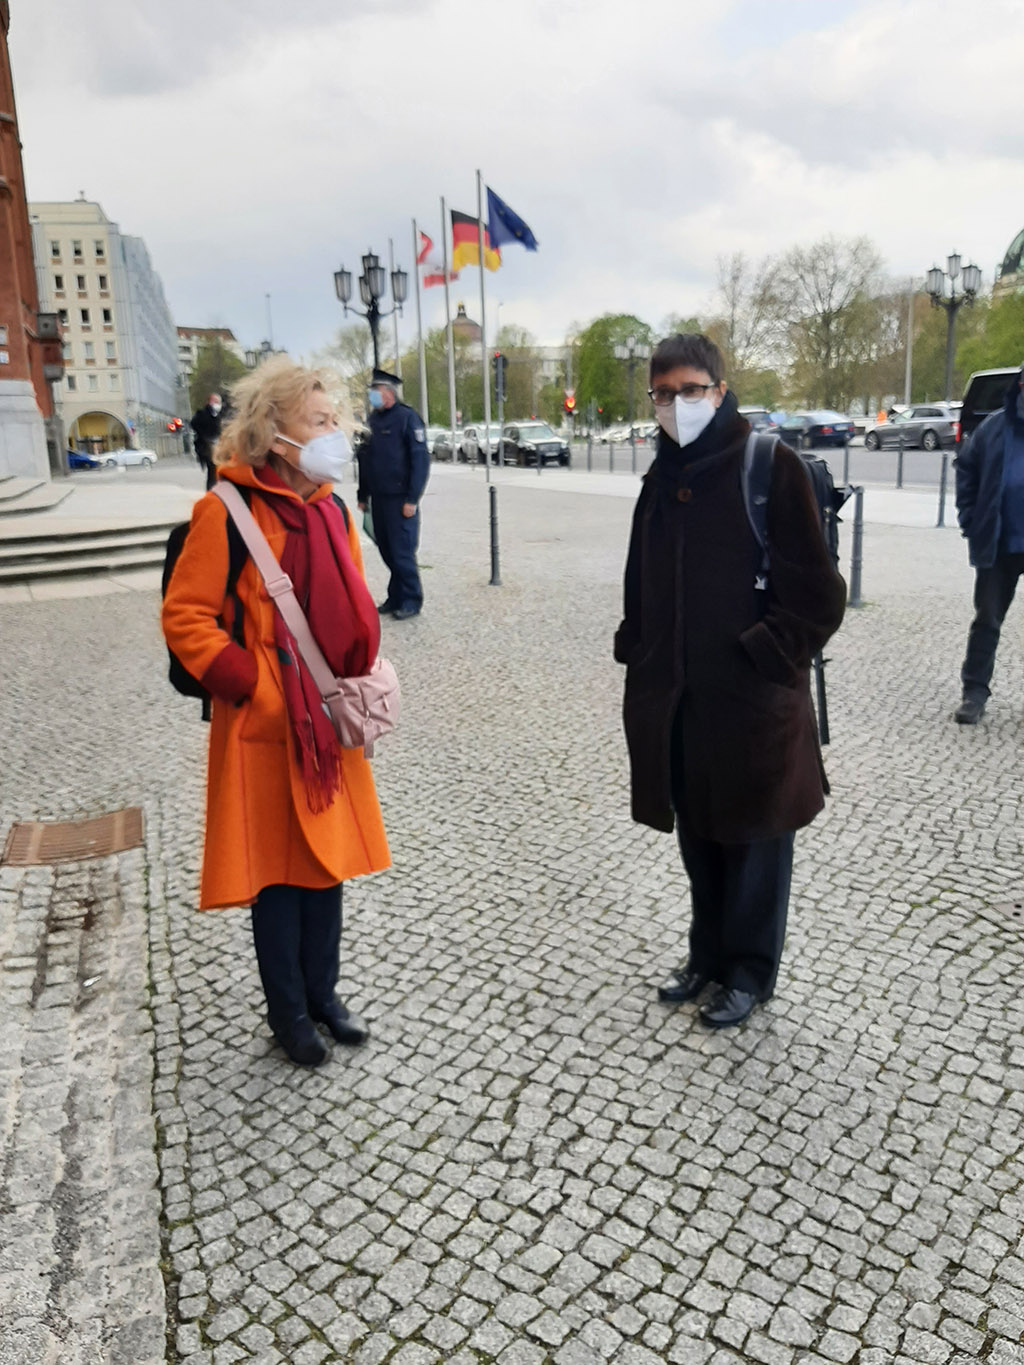 Ursula Engelen-Kefer und Christiane Braunert-Rümenapf Landesbeauftragte für Menschen mit Behinderung in Berlin